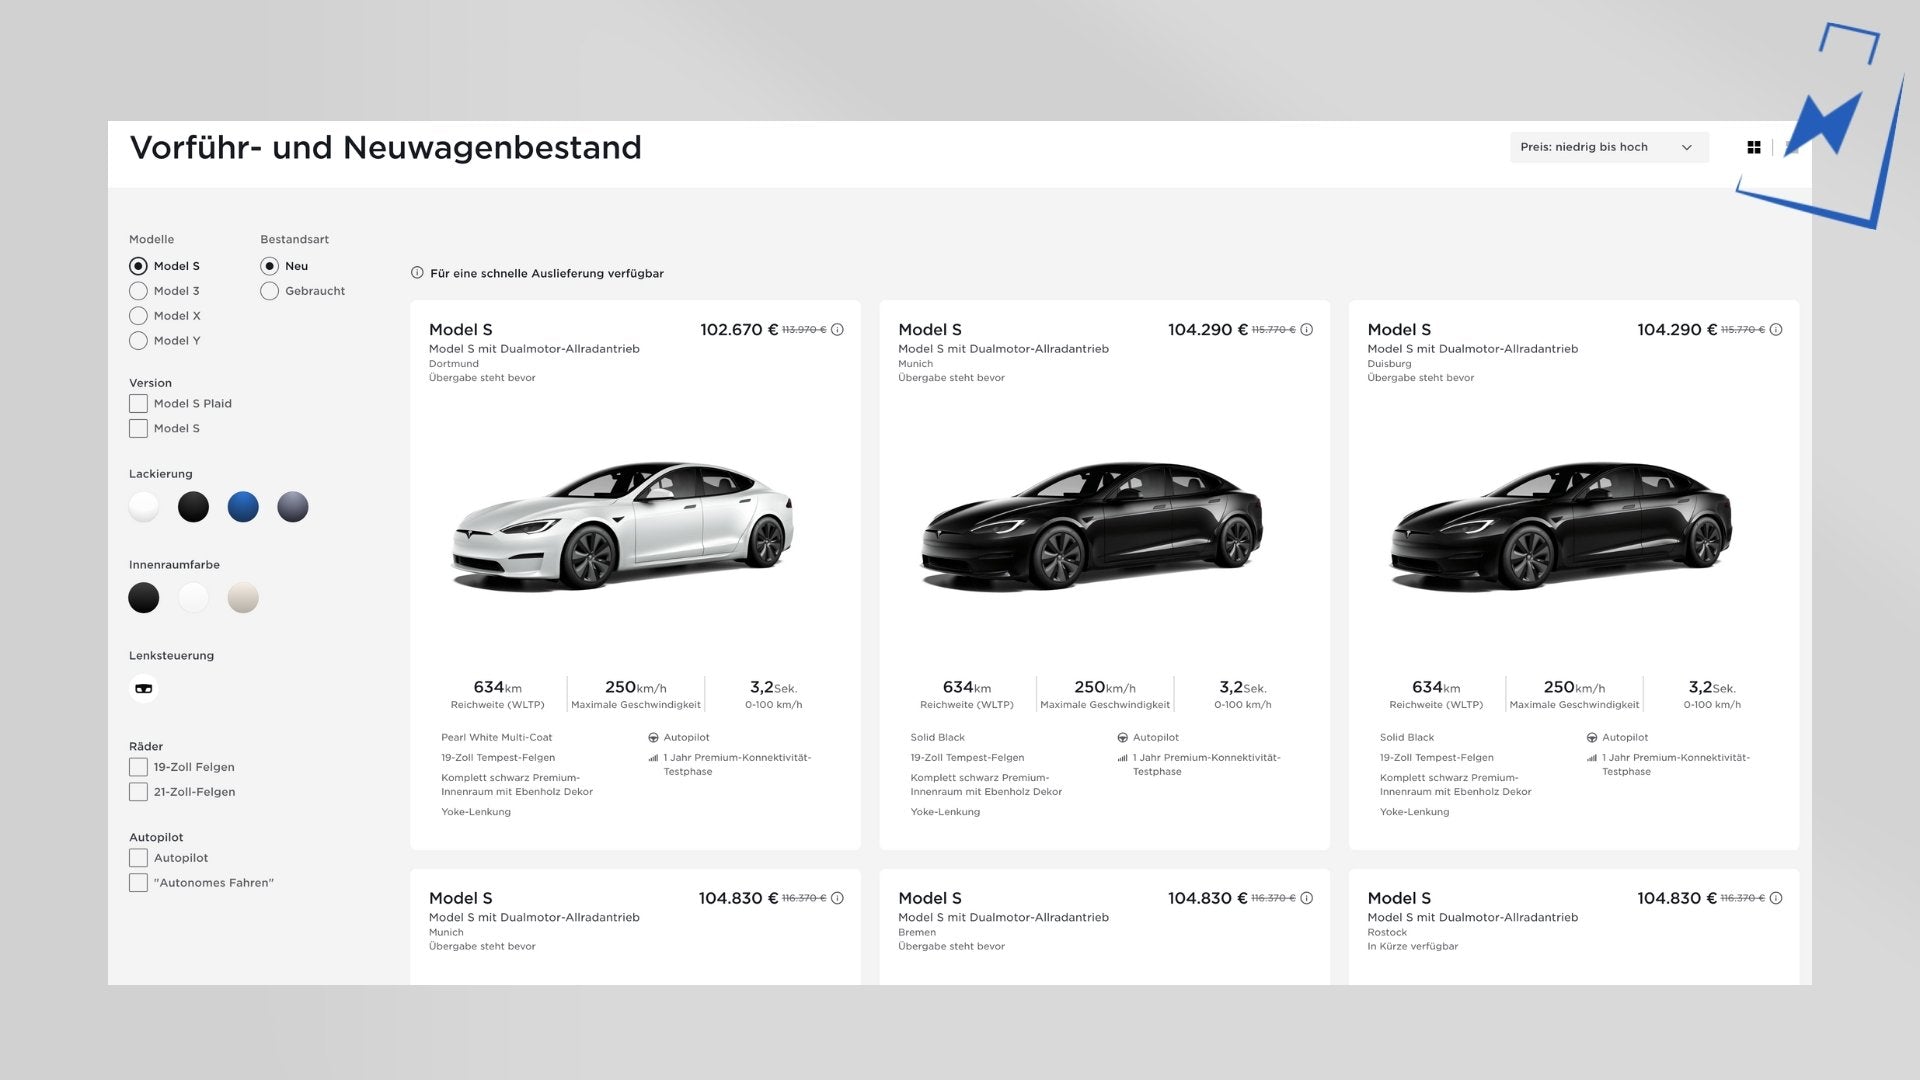 Stock de Model S et Model X disponible, remises possibles jusqu'à